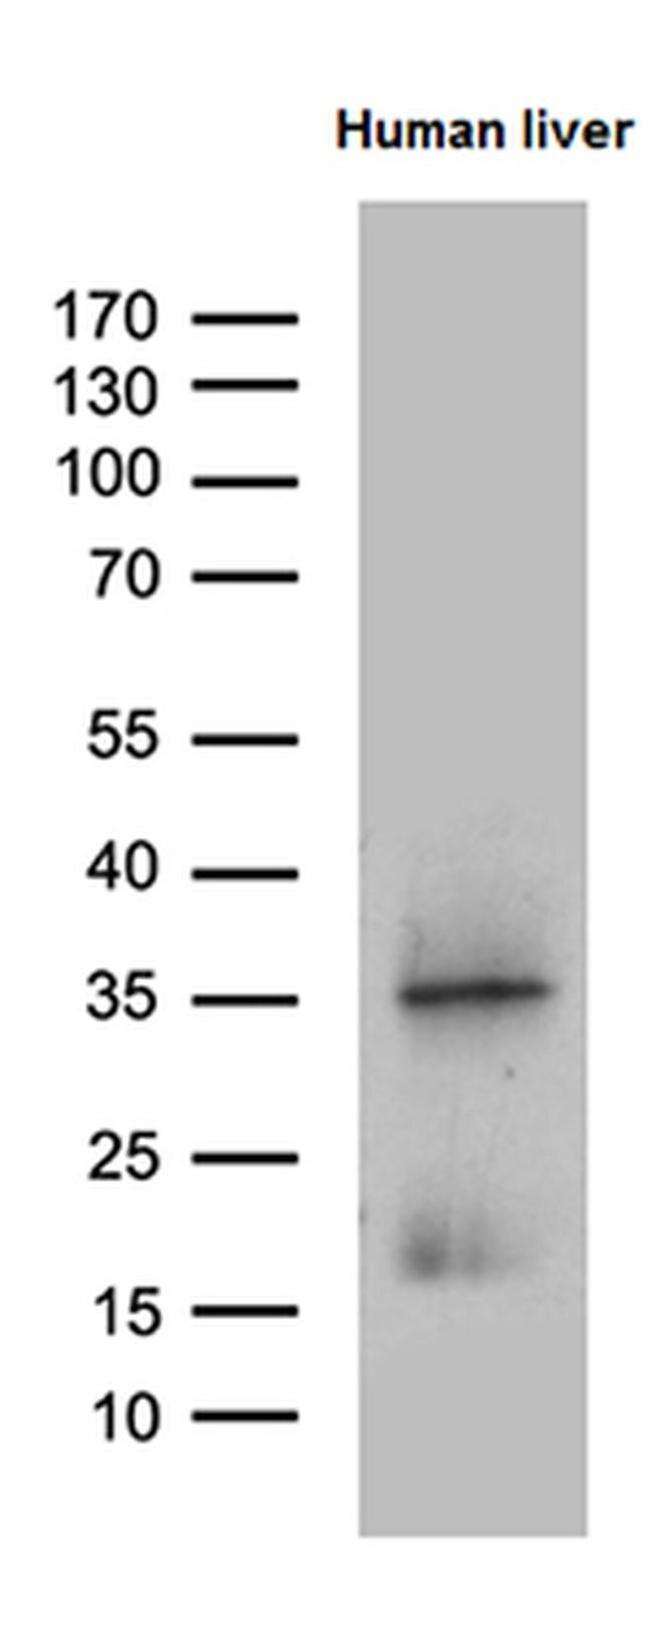 PLAC8 Antibody in Western Blot (WB)